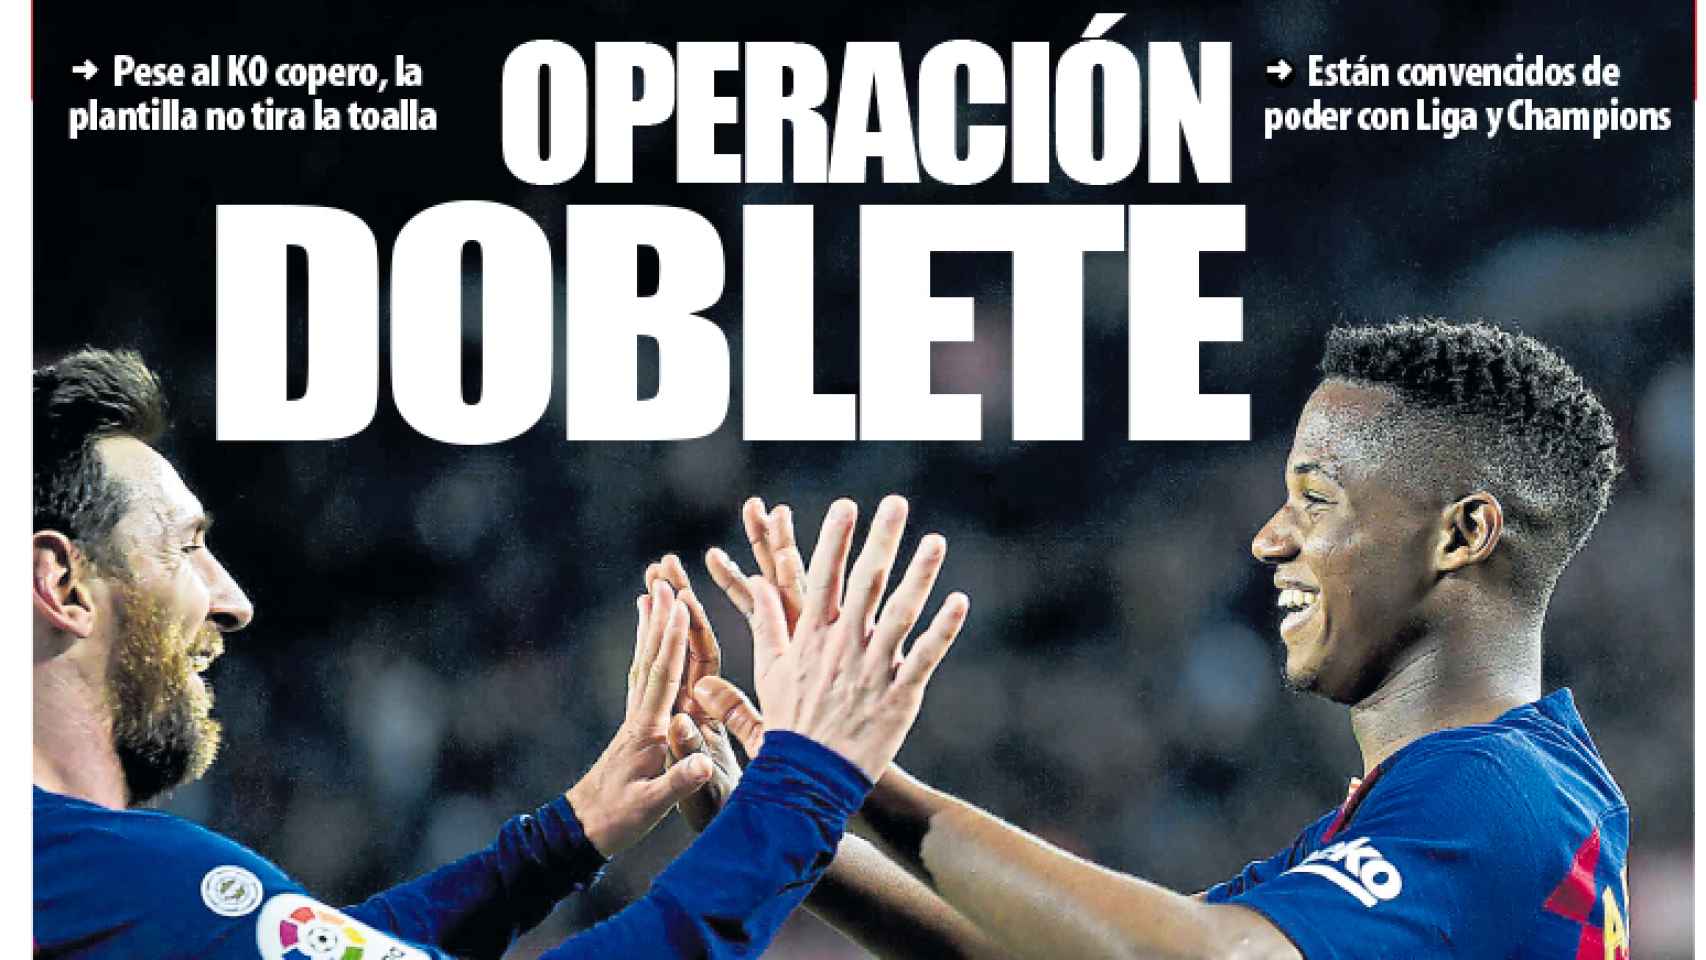 Portada Mundo Deportivo (08/02/2020)